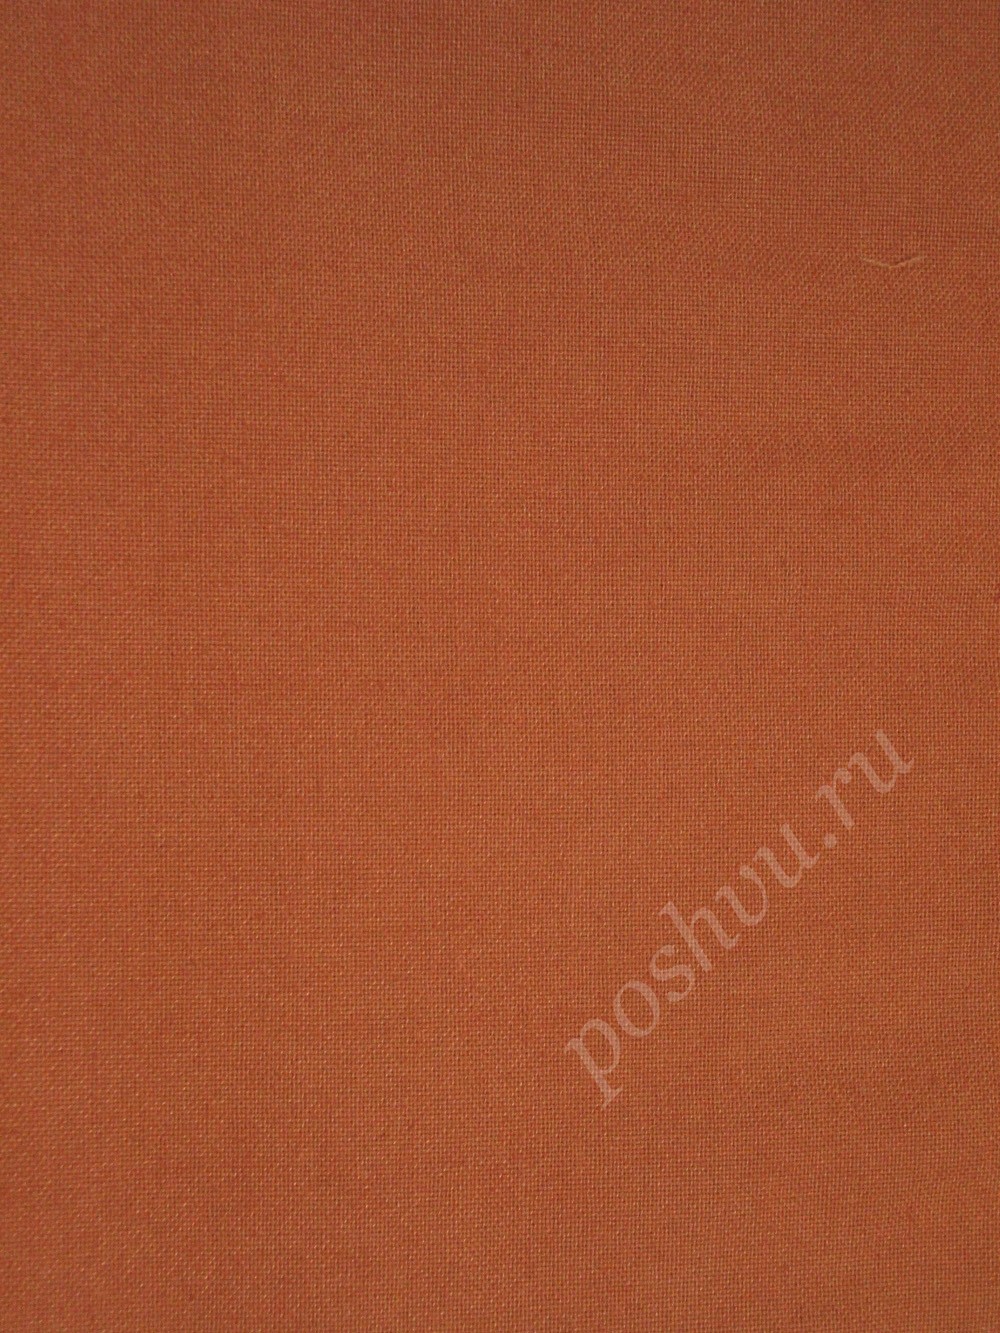 Ткань для штор портьерная, полиэстер, хлопок Panama liso 12